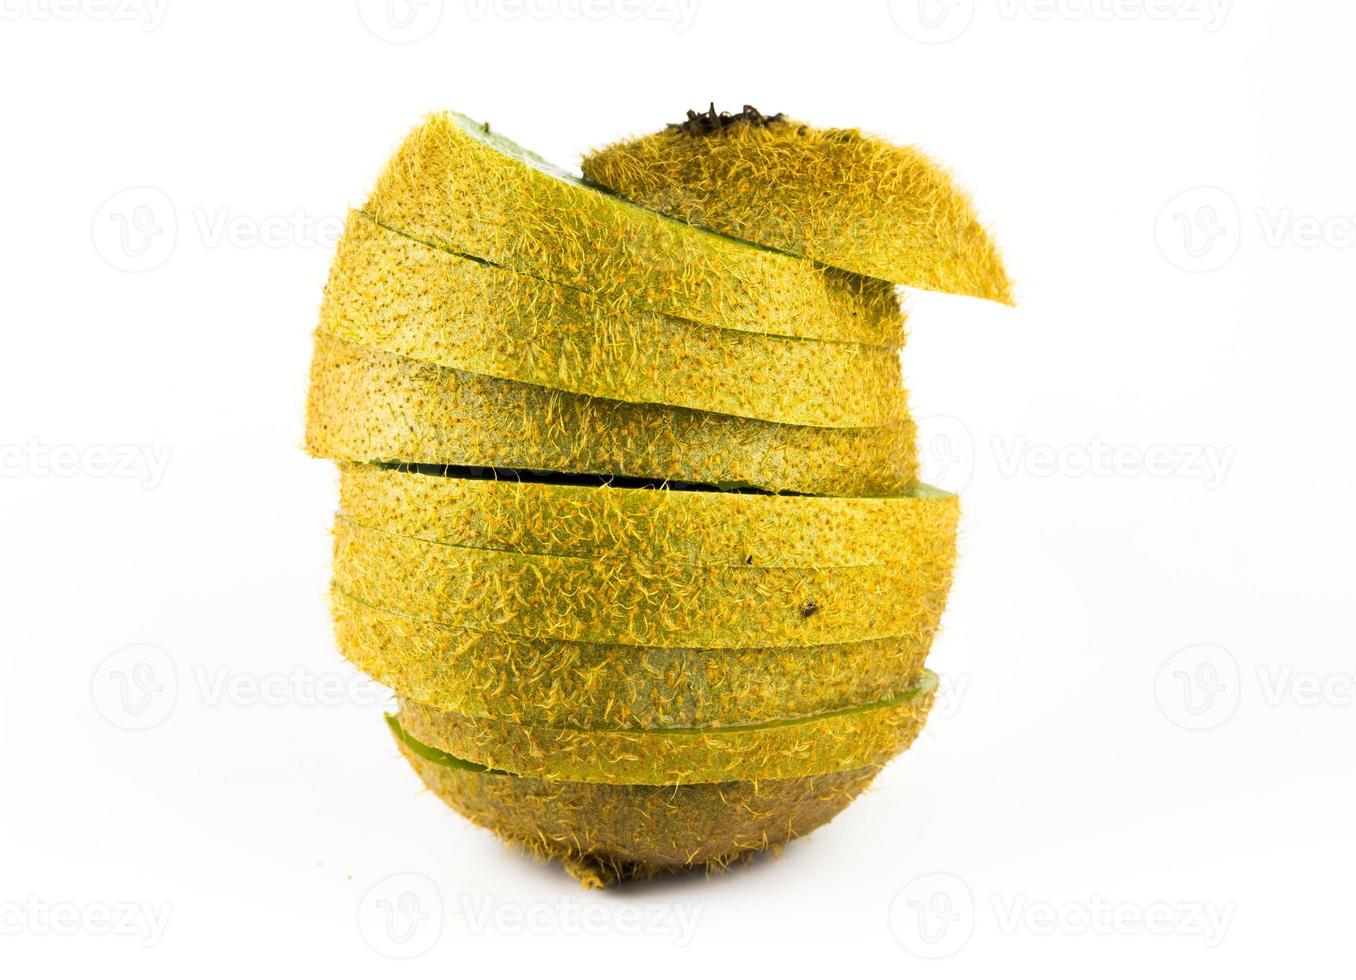 kiwifrukt på vit bakgrund foto